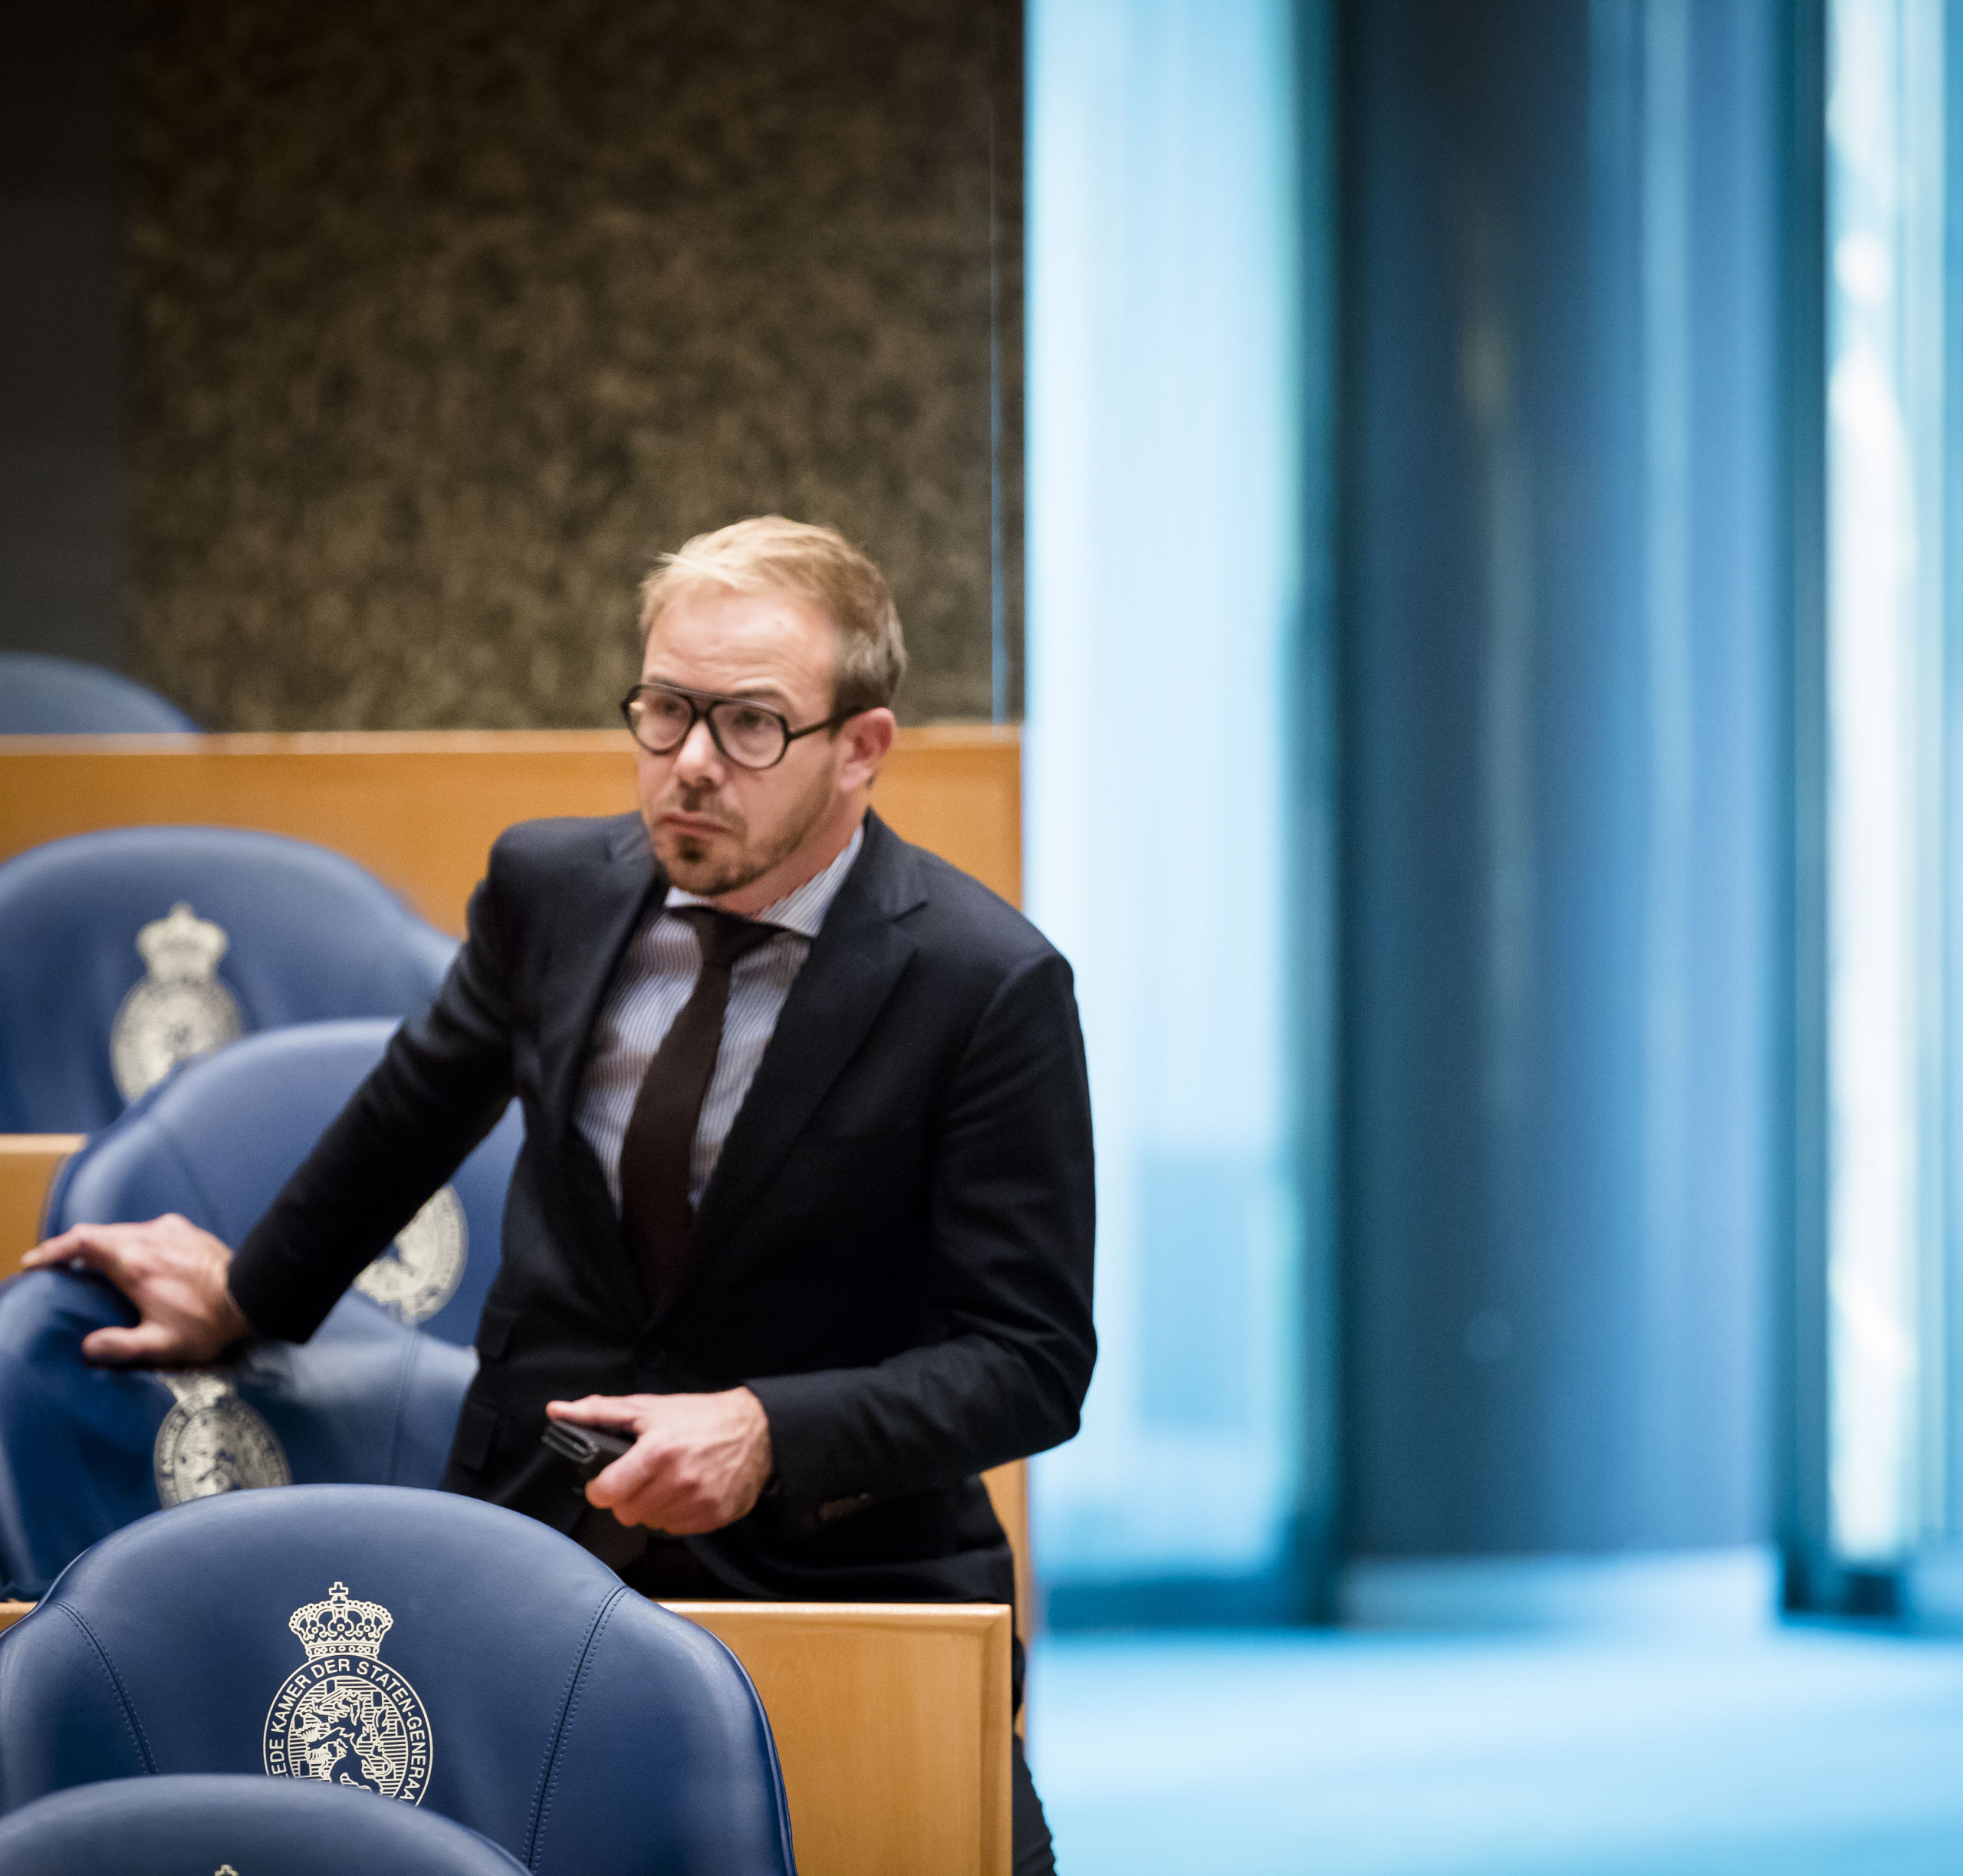 2017-11-28 15:28:21 DEN HAAG - Gijs van Dijk (Pvda) tijdens het wekelijkse vragenuur in de Tweede Kamer. ANP BART MAAT